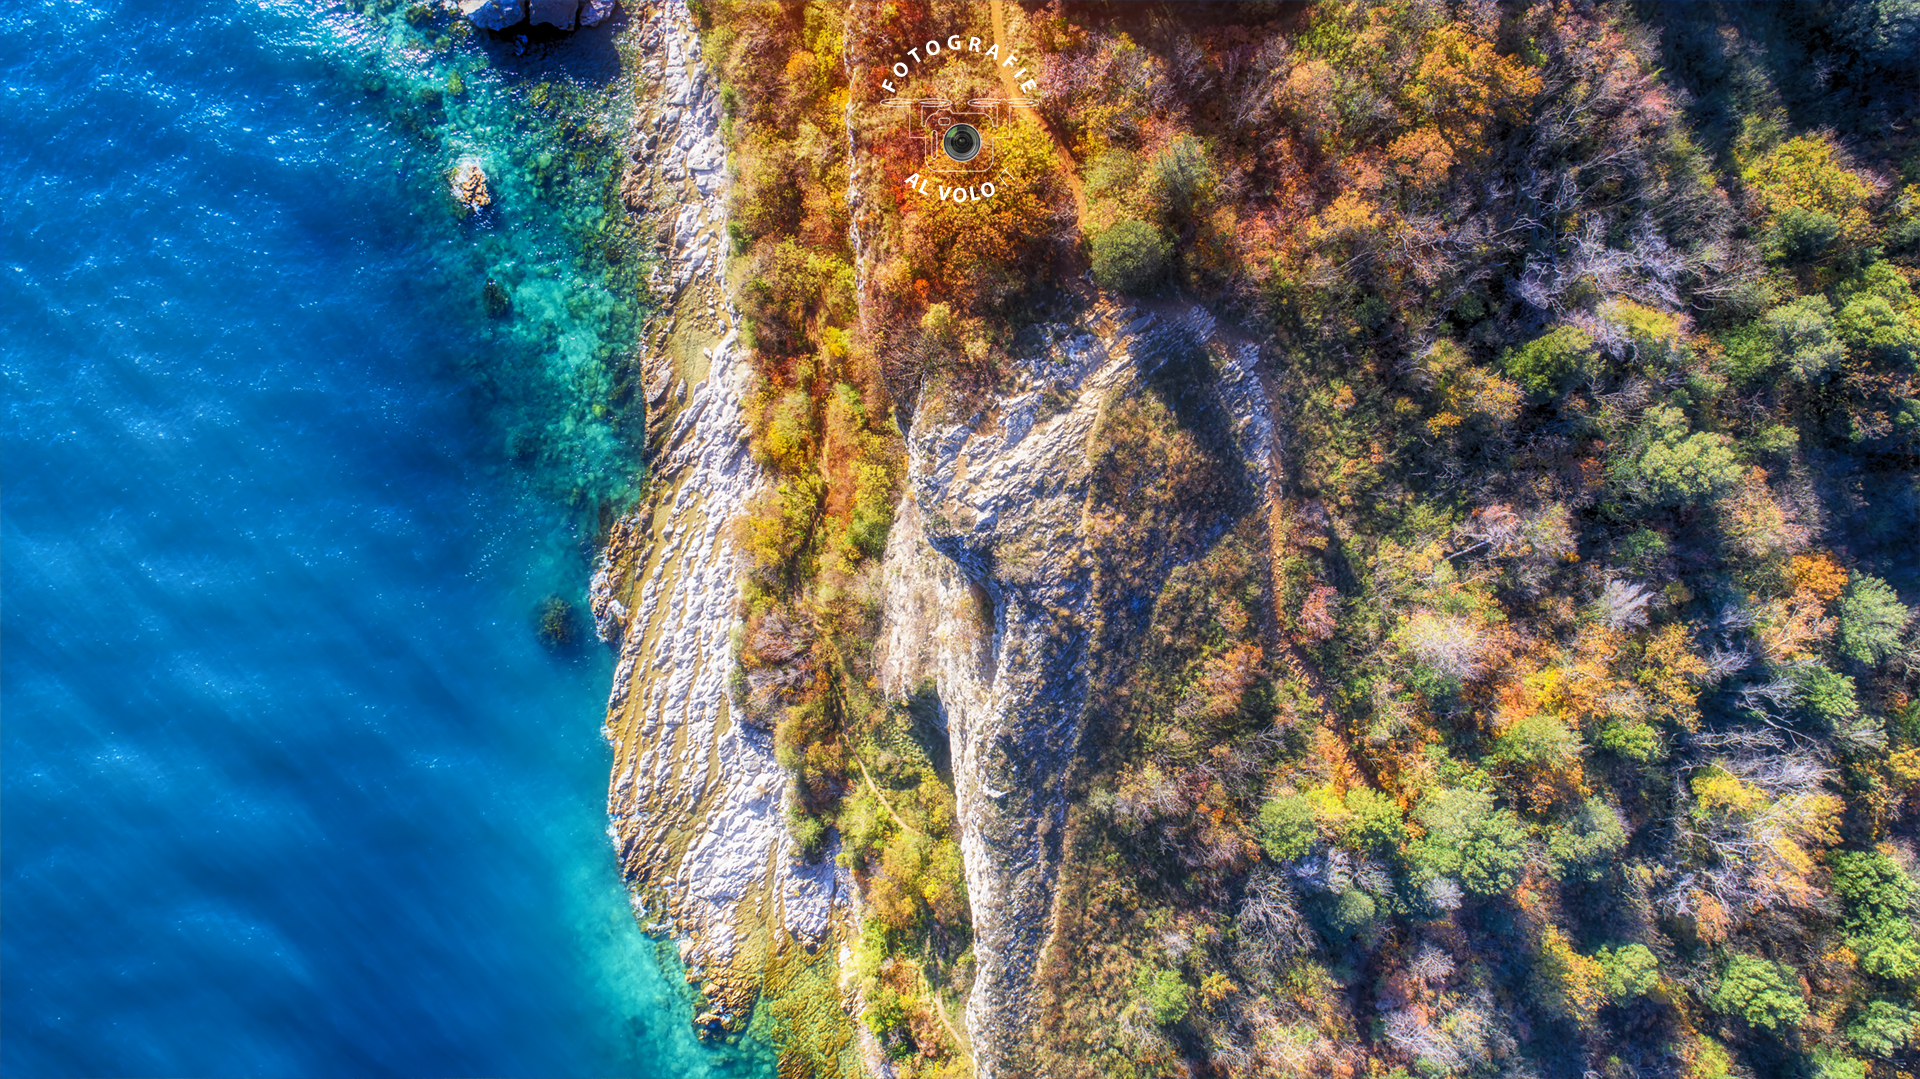 Fotografie Al Volo! Riprese aeree con drone - Sirmione - Lago di Garda - Tobia Fattori